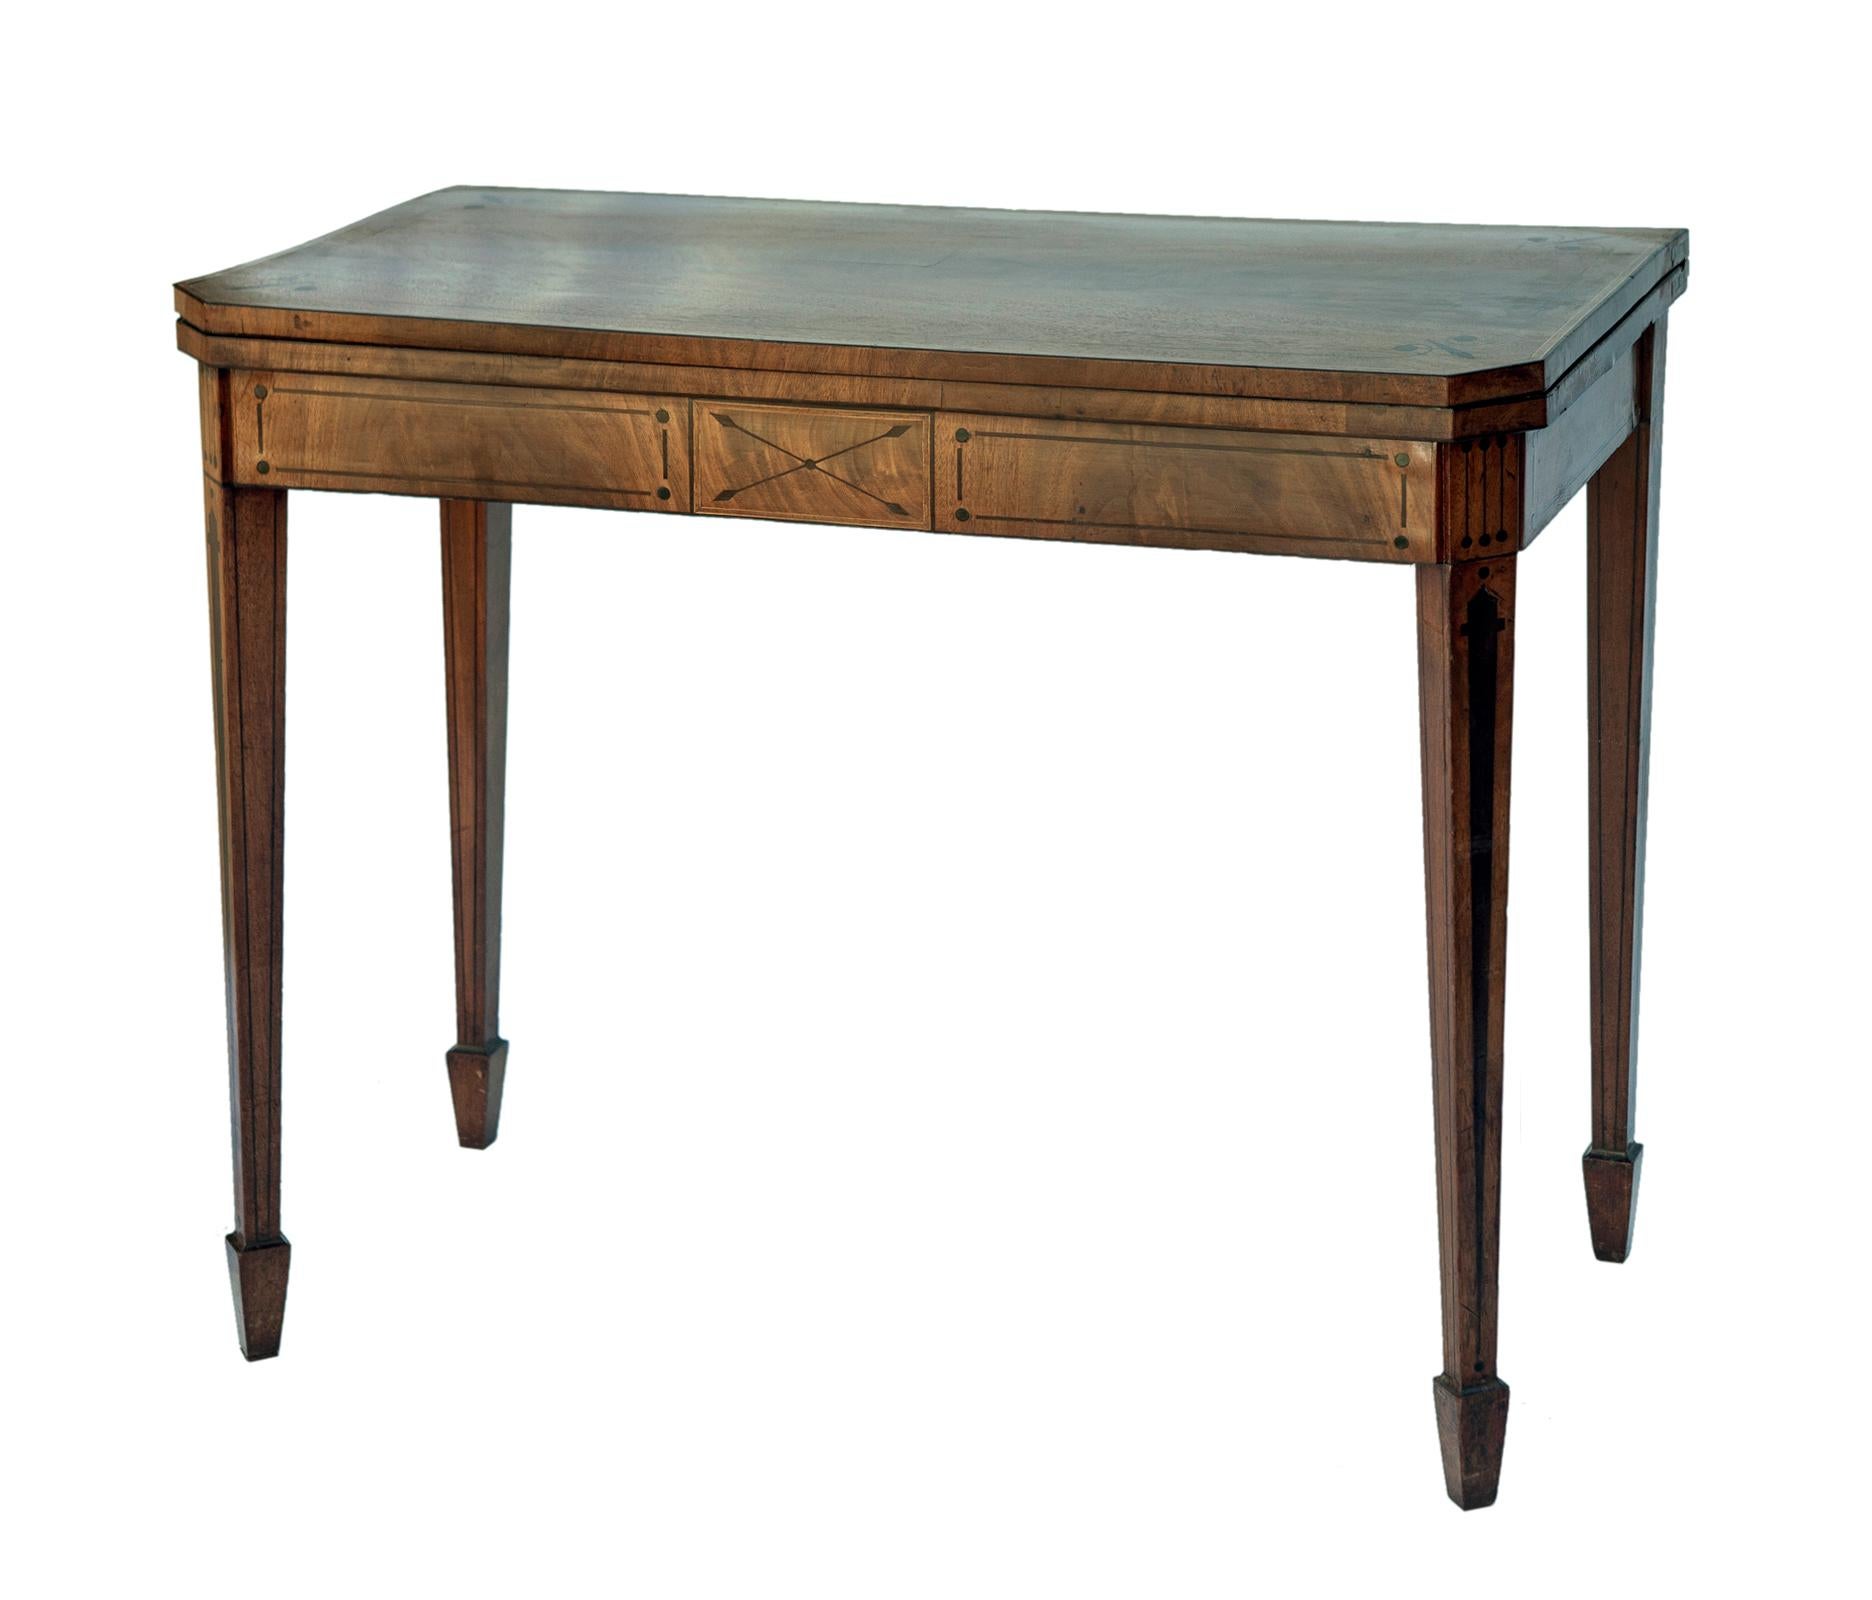 Sheraton-Revival-Kartentisch mit Intarsien, mit seltener grafischer Intarsienplatte und Ebenholzdetails. Der Tisch steht auf sich verjüngenden, eingelegten Beinen.
Die Spielfläche wurde mit echtem Leder überzogen.
Dieser Tisch hat seine